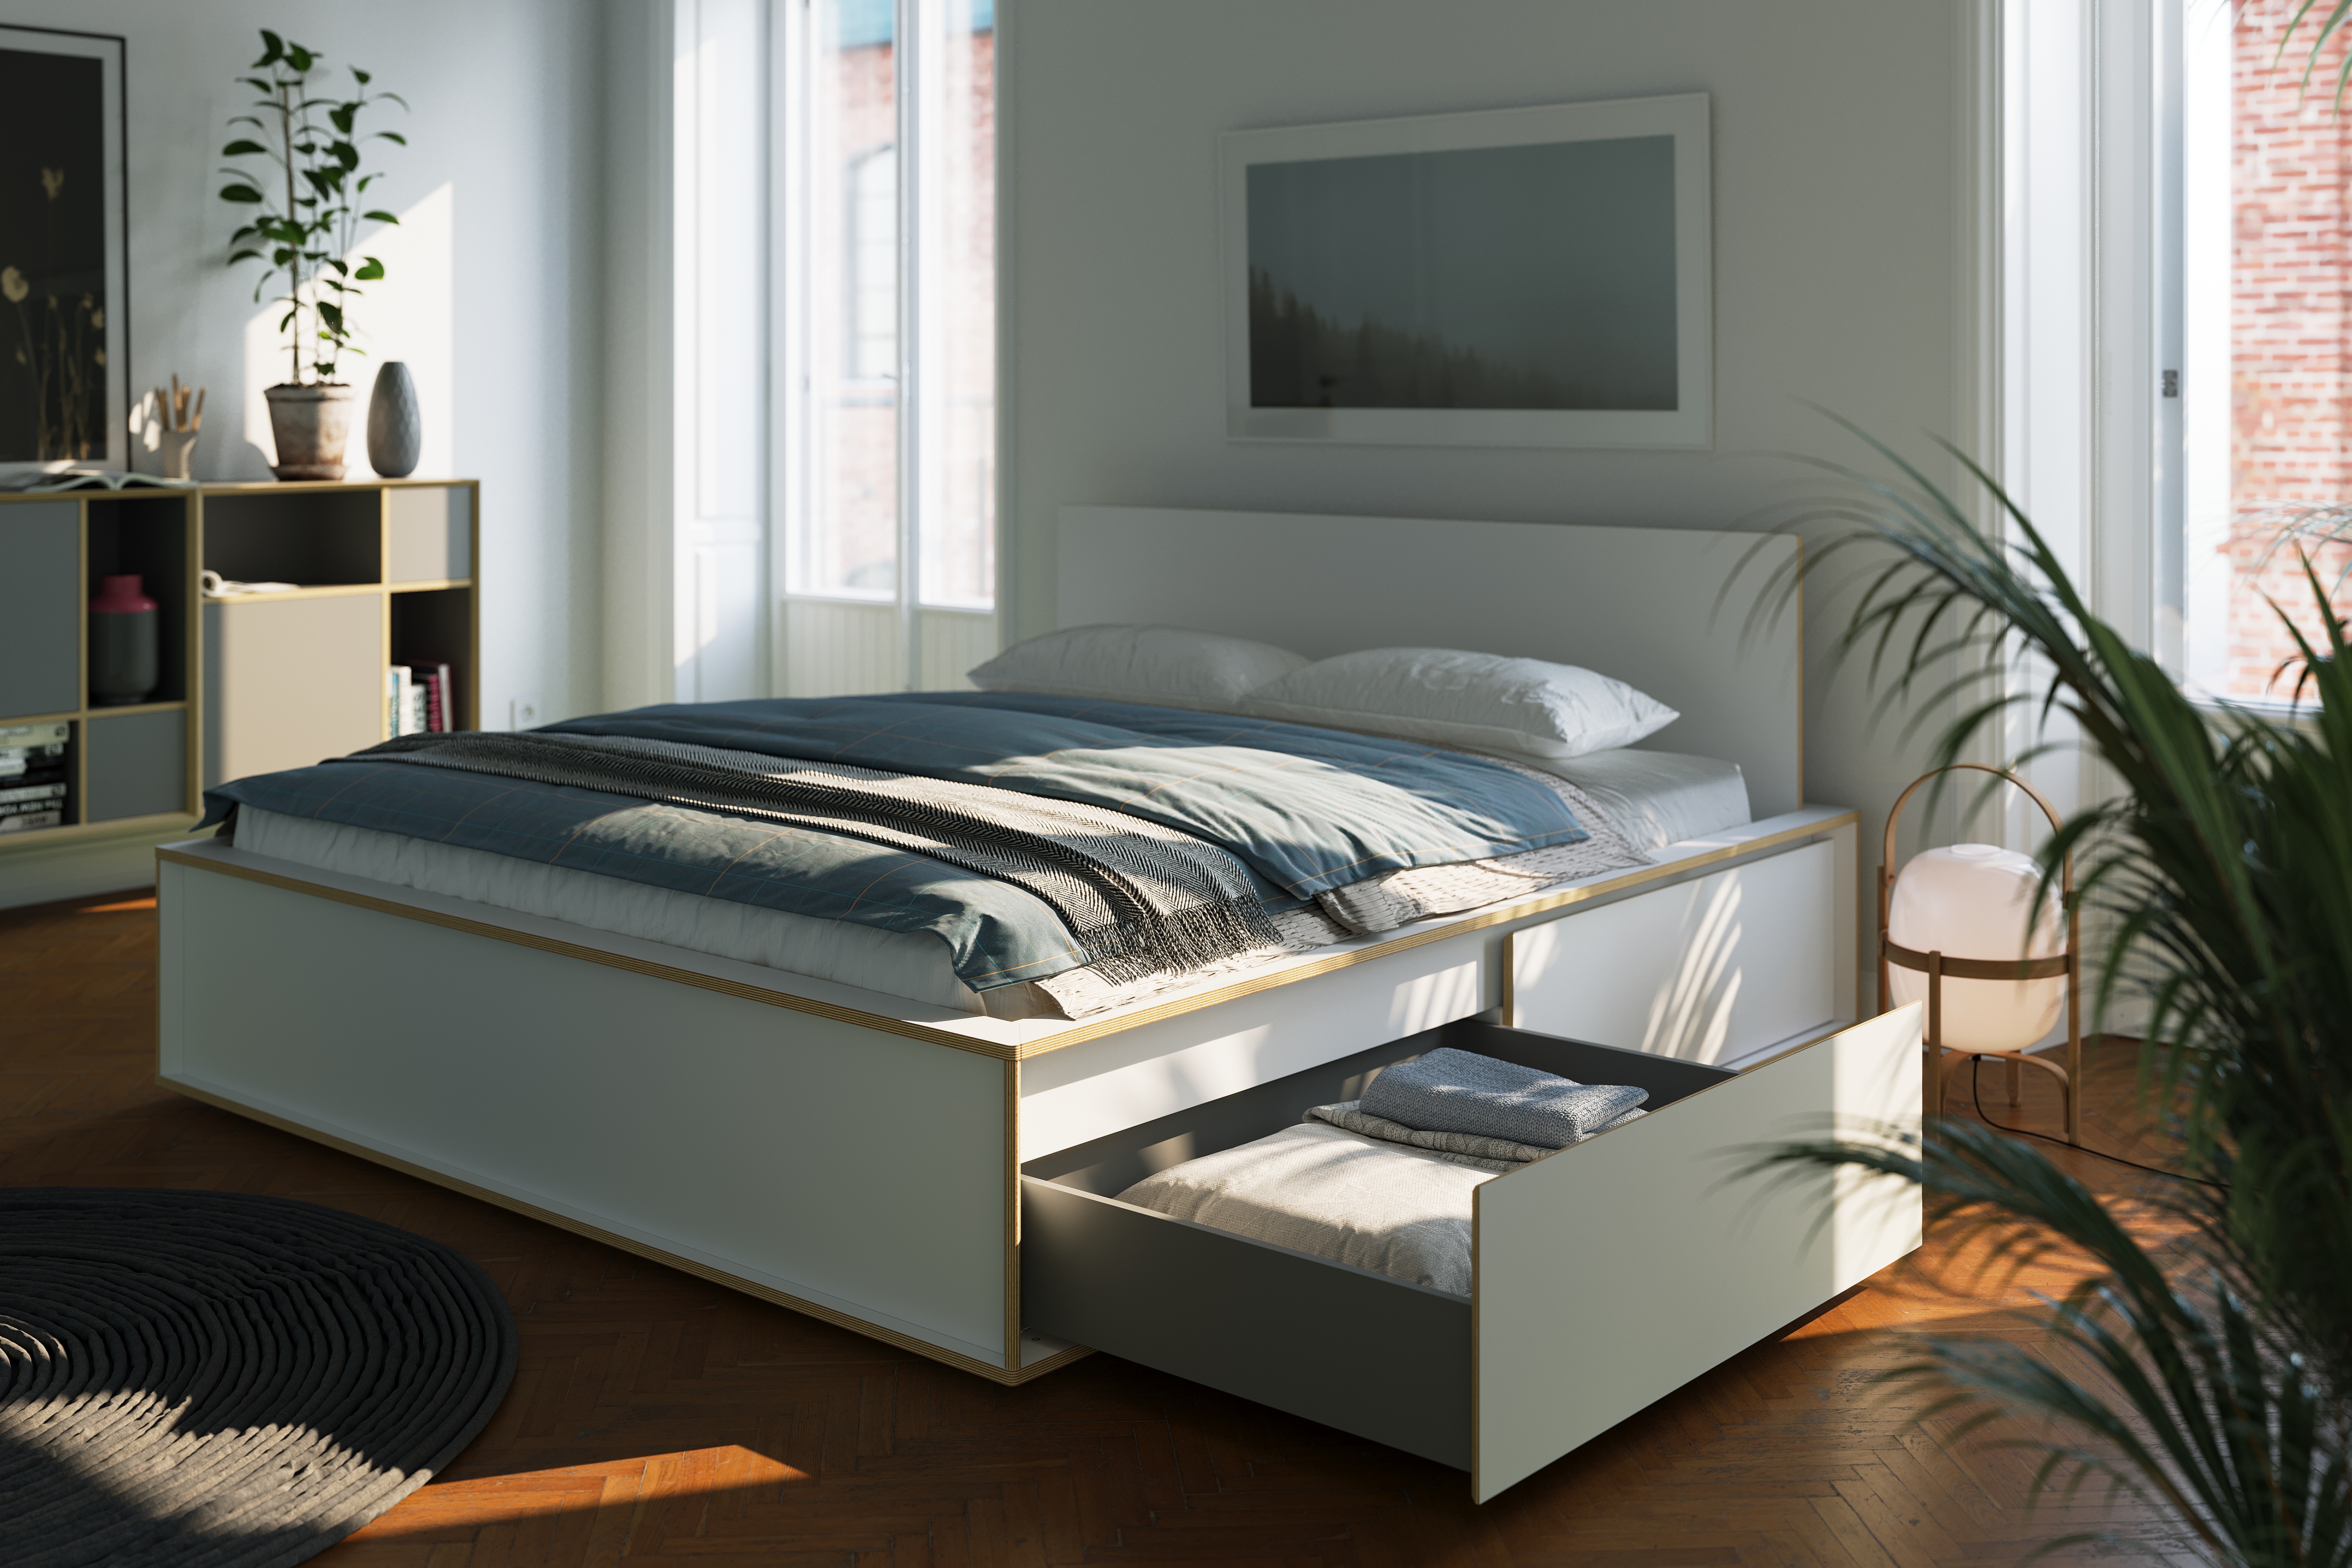 Müller Small Living - Design-Möbel direkt vom Hersteller kaufen